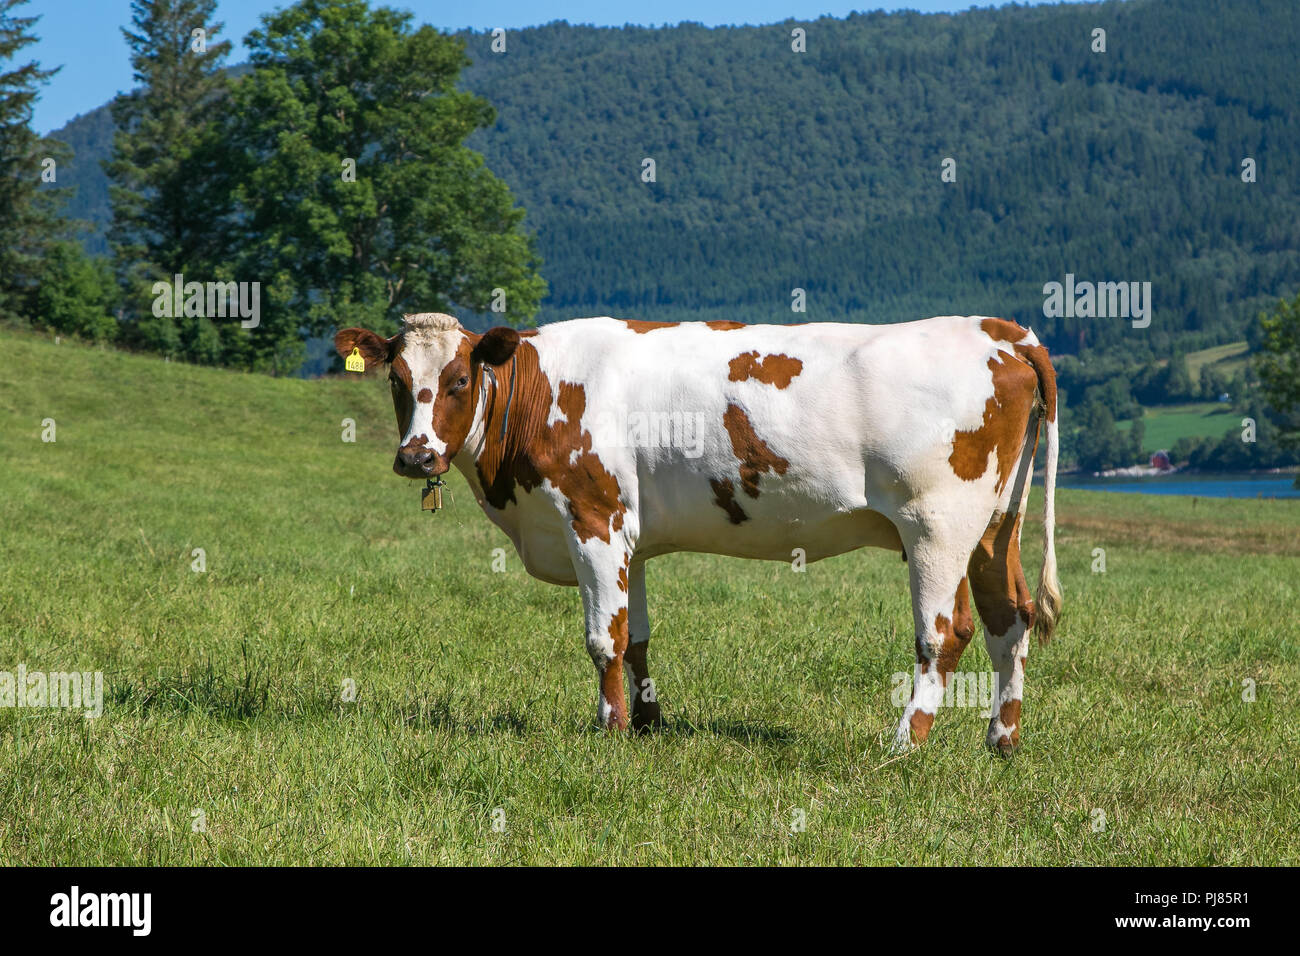 Belle vache en train de brouter dans un champ agricole Eidsbygda, la Norvège. Banque D'Images